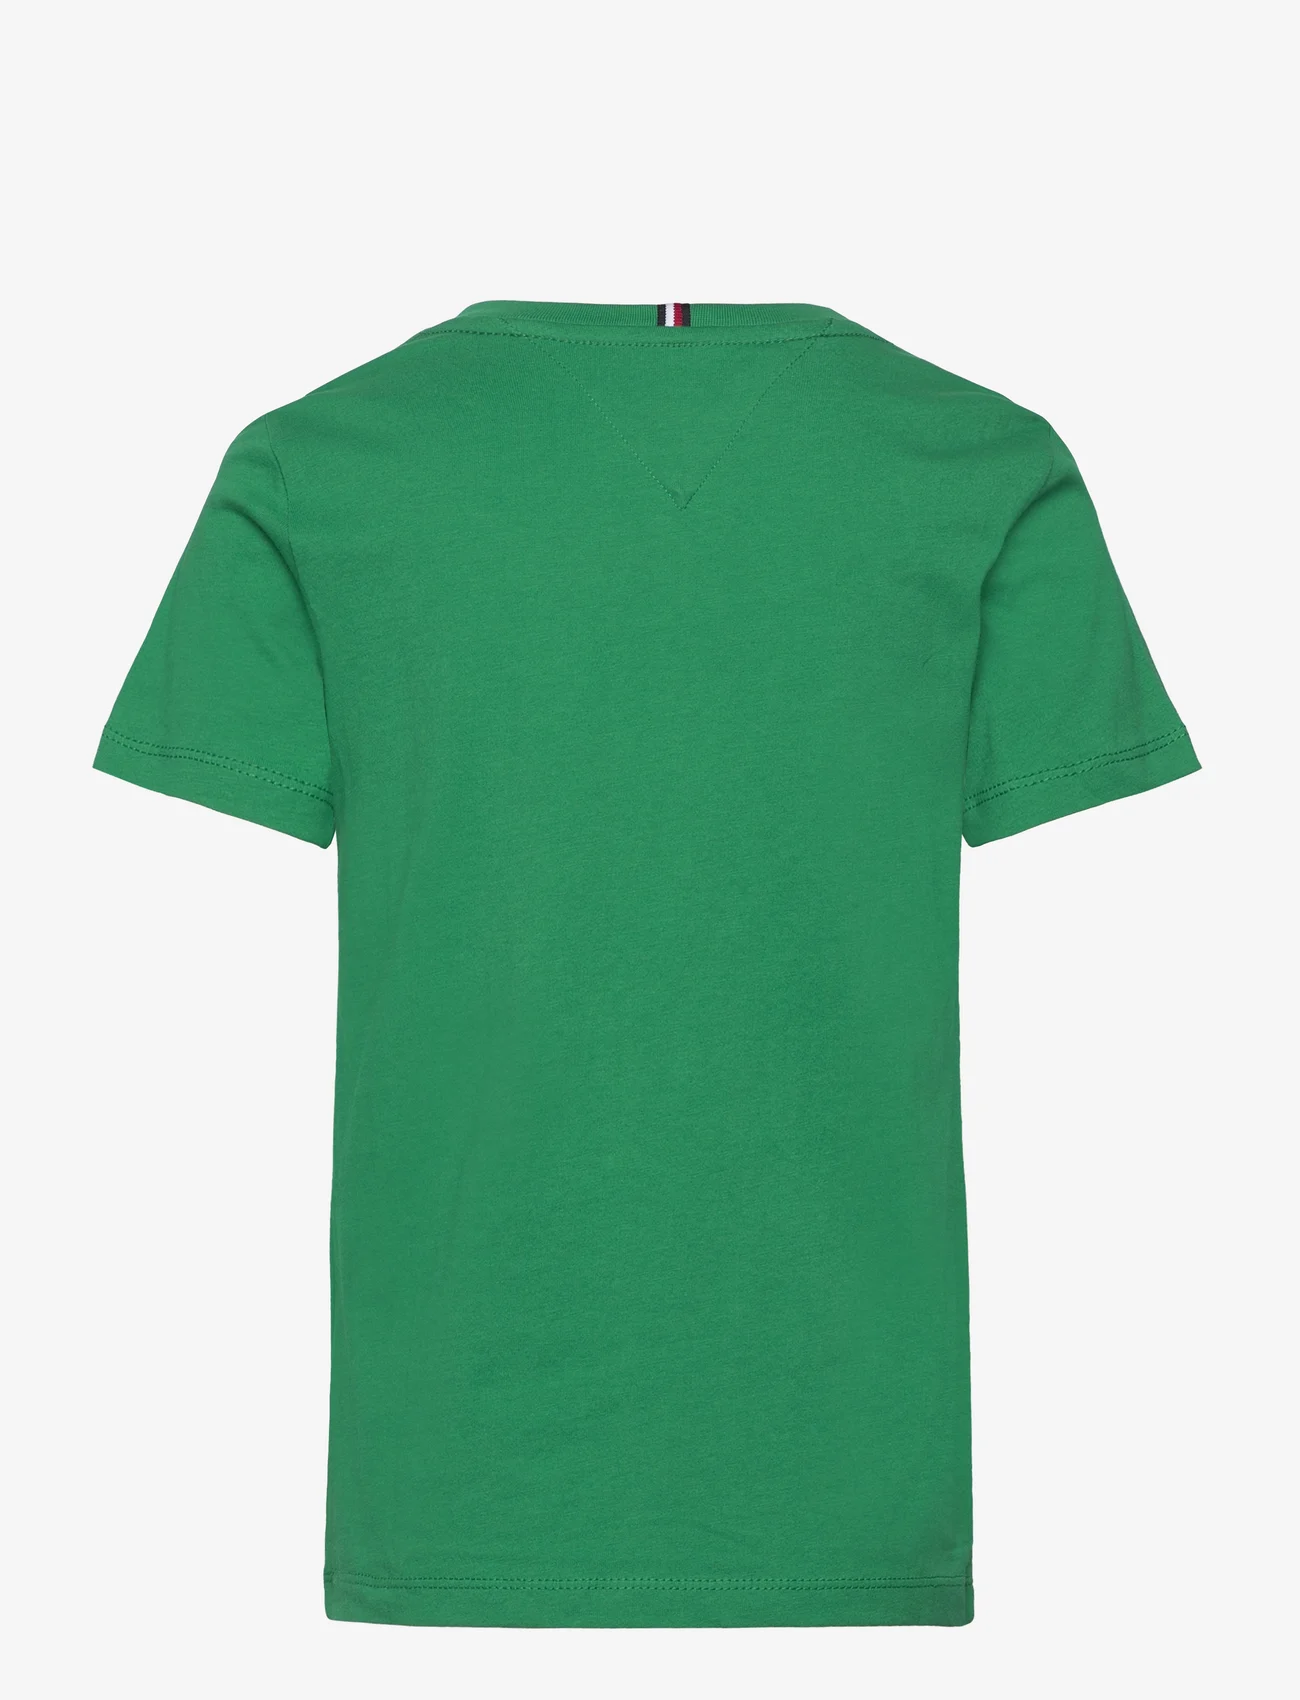 Tommy Hilfiger - U ESSENTIAL TEE S/S - kortärmade t-shirts - olympic green - 1